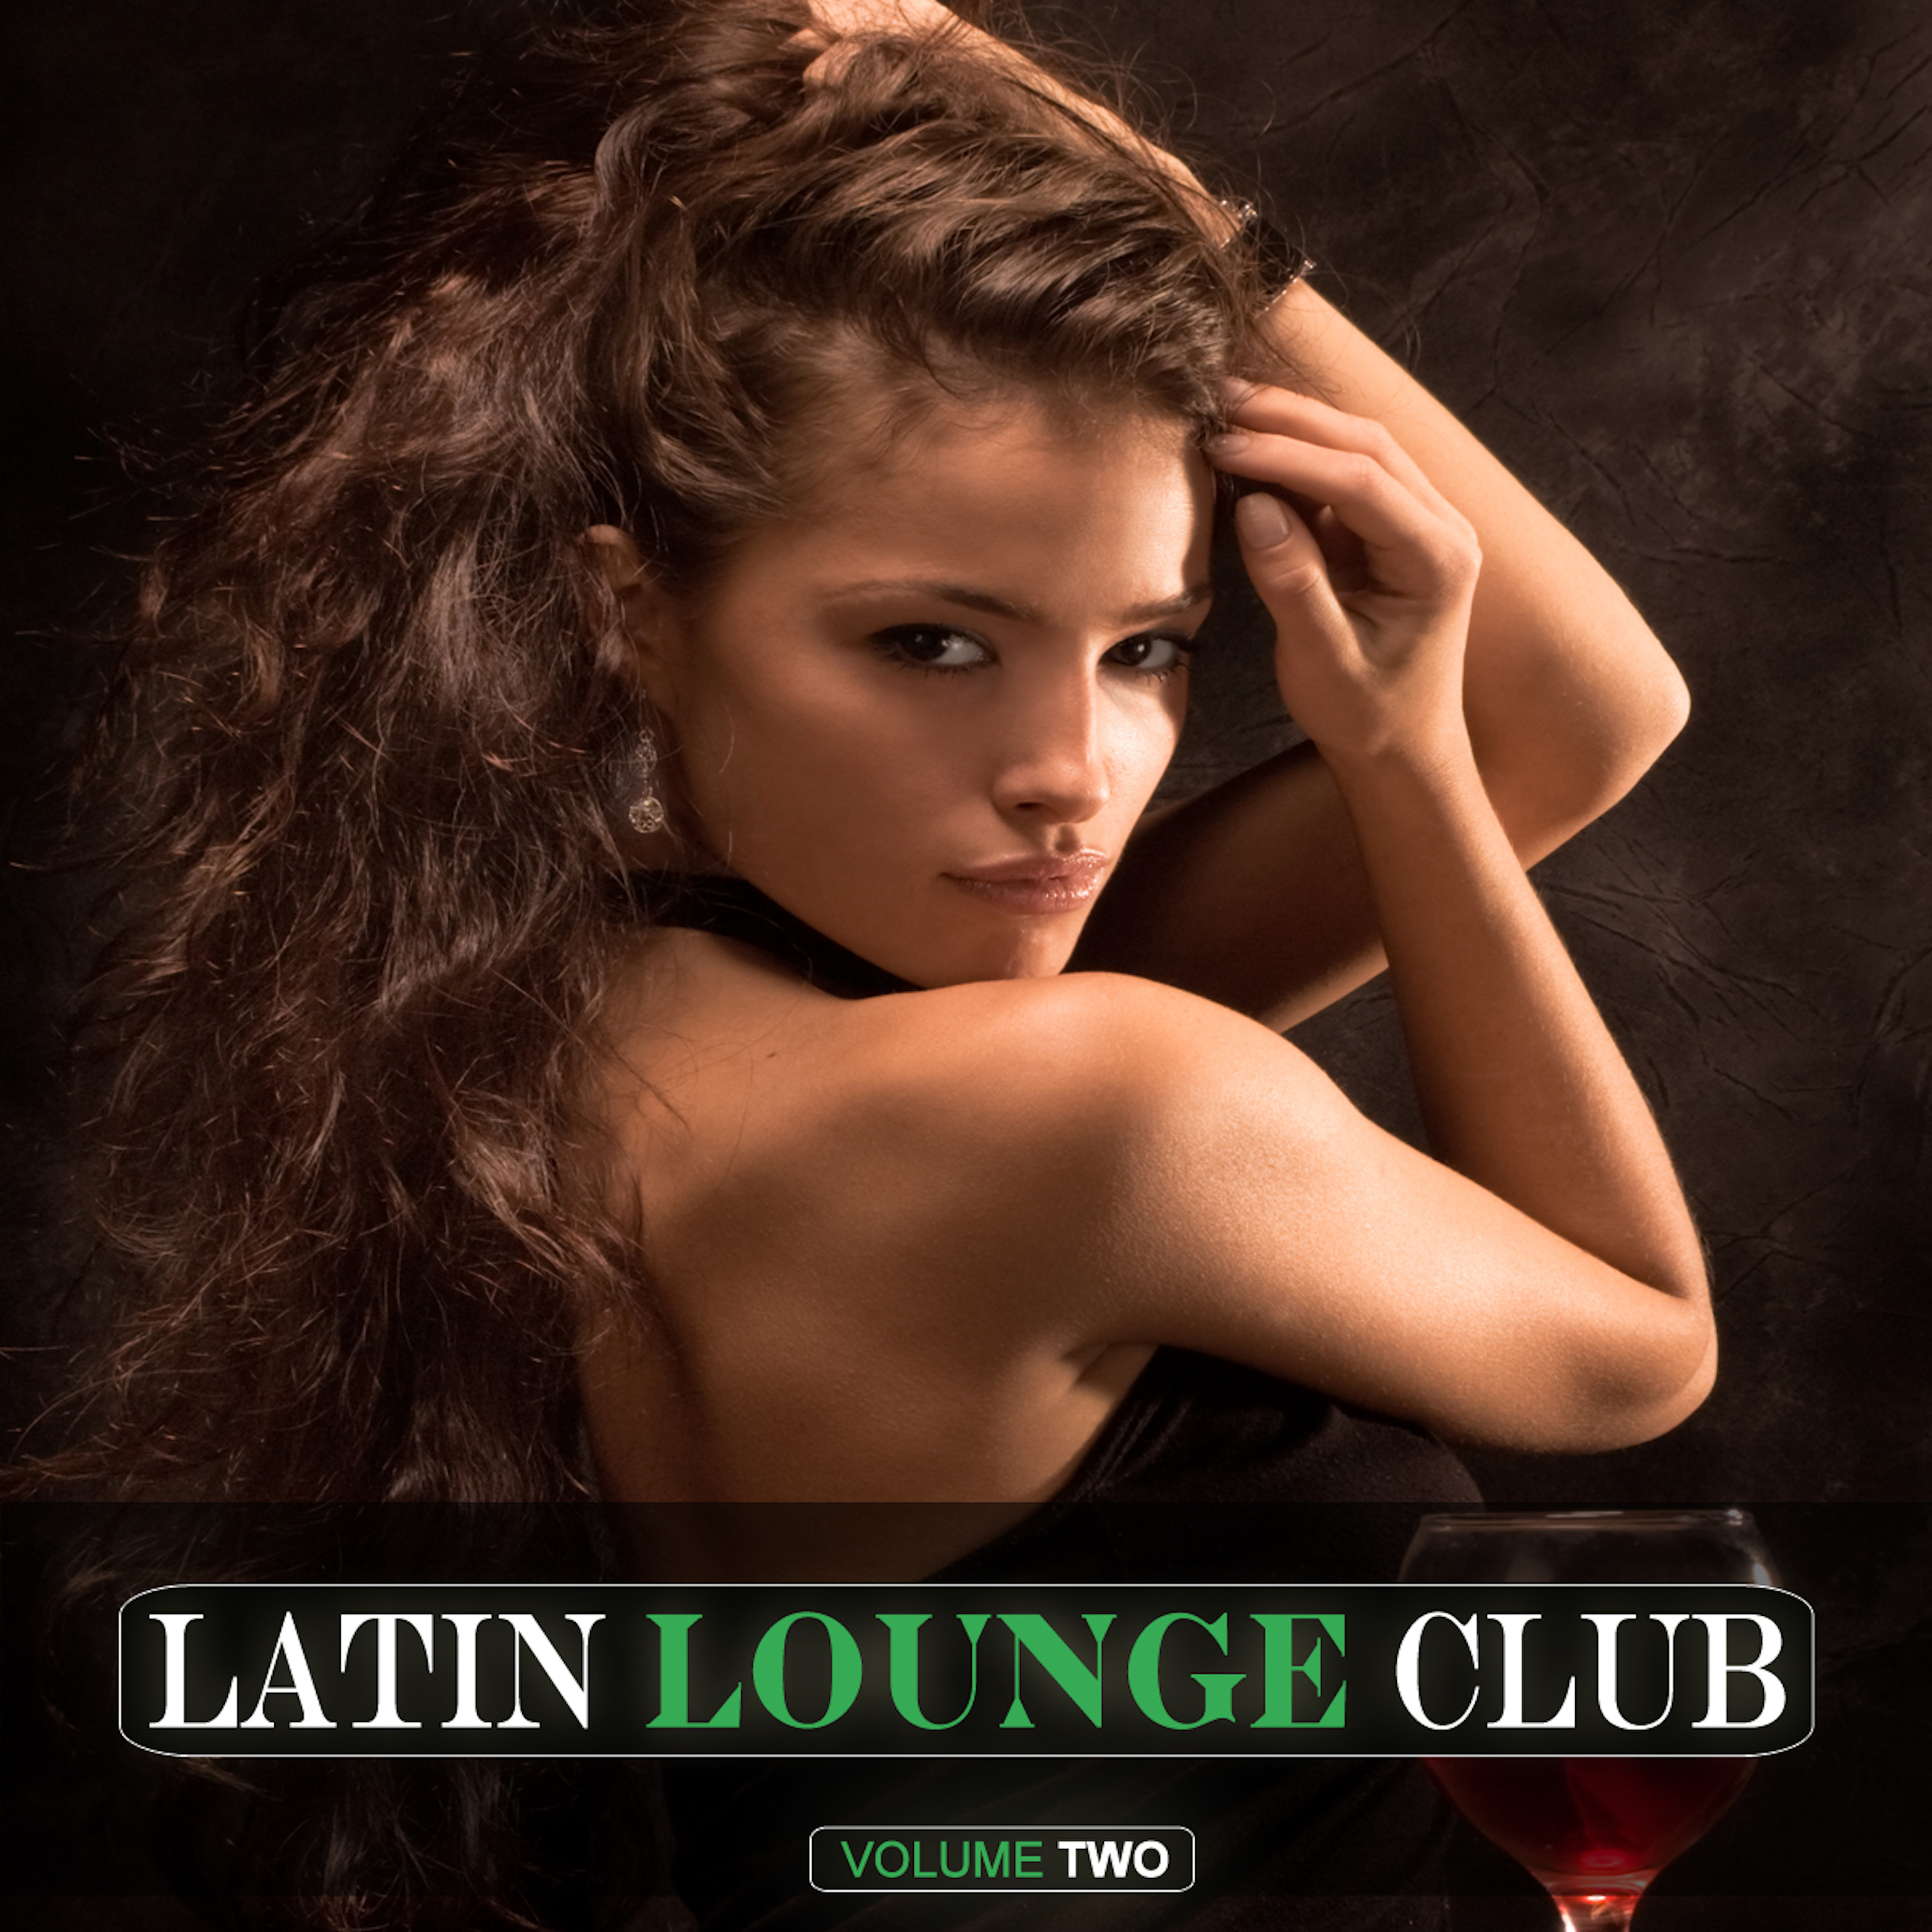 Latin Lounge Club Vol. 2